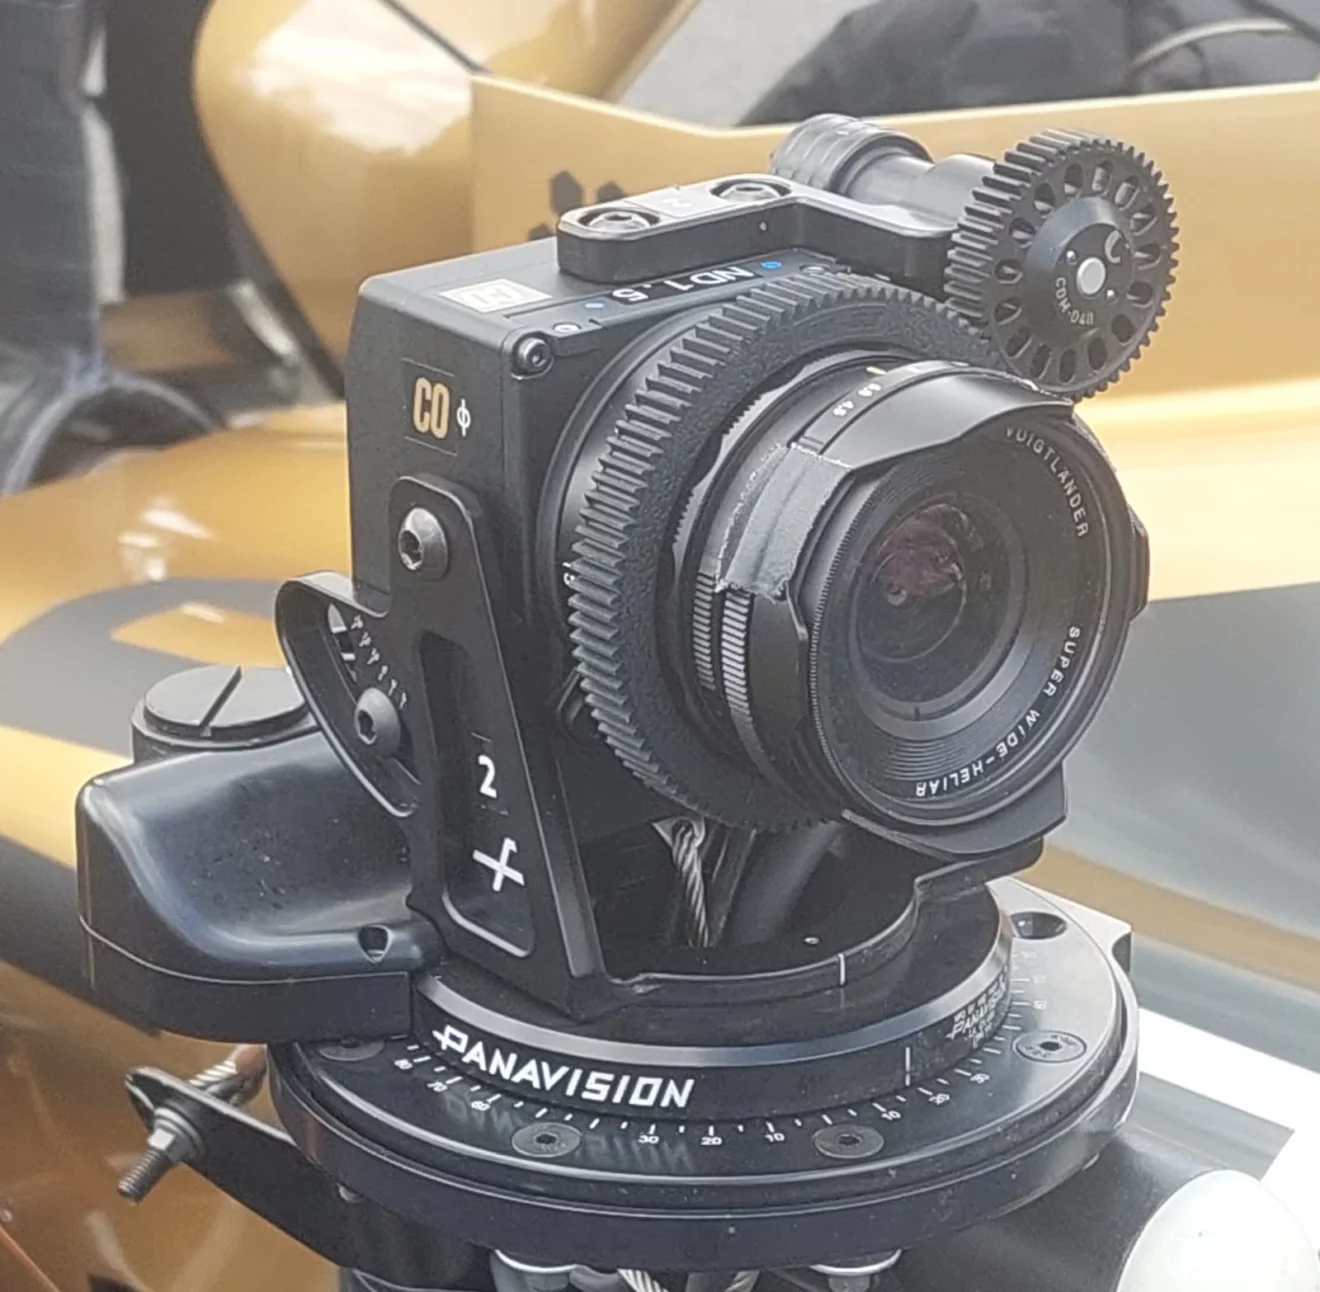 Révélations exclusives : Découvrez les premières images du nouvel appareil photo compact Venice de Sony !